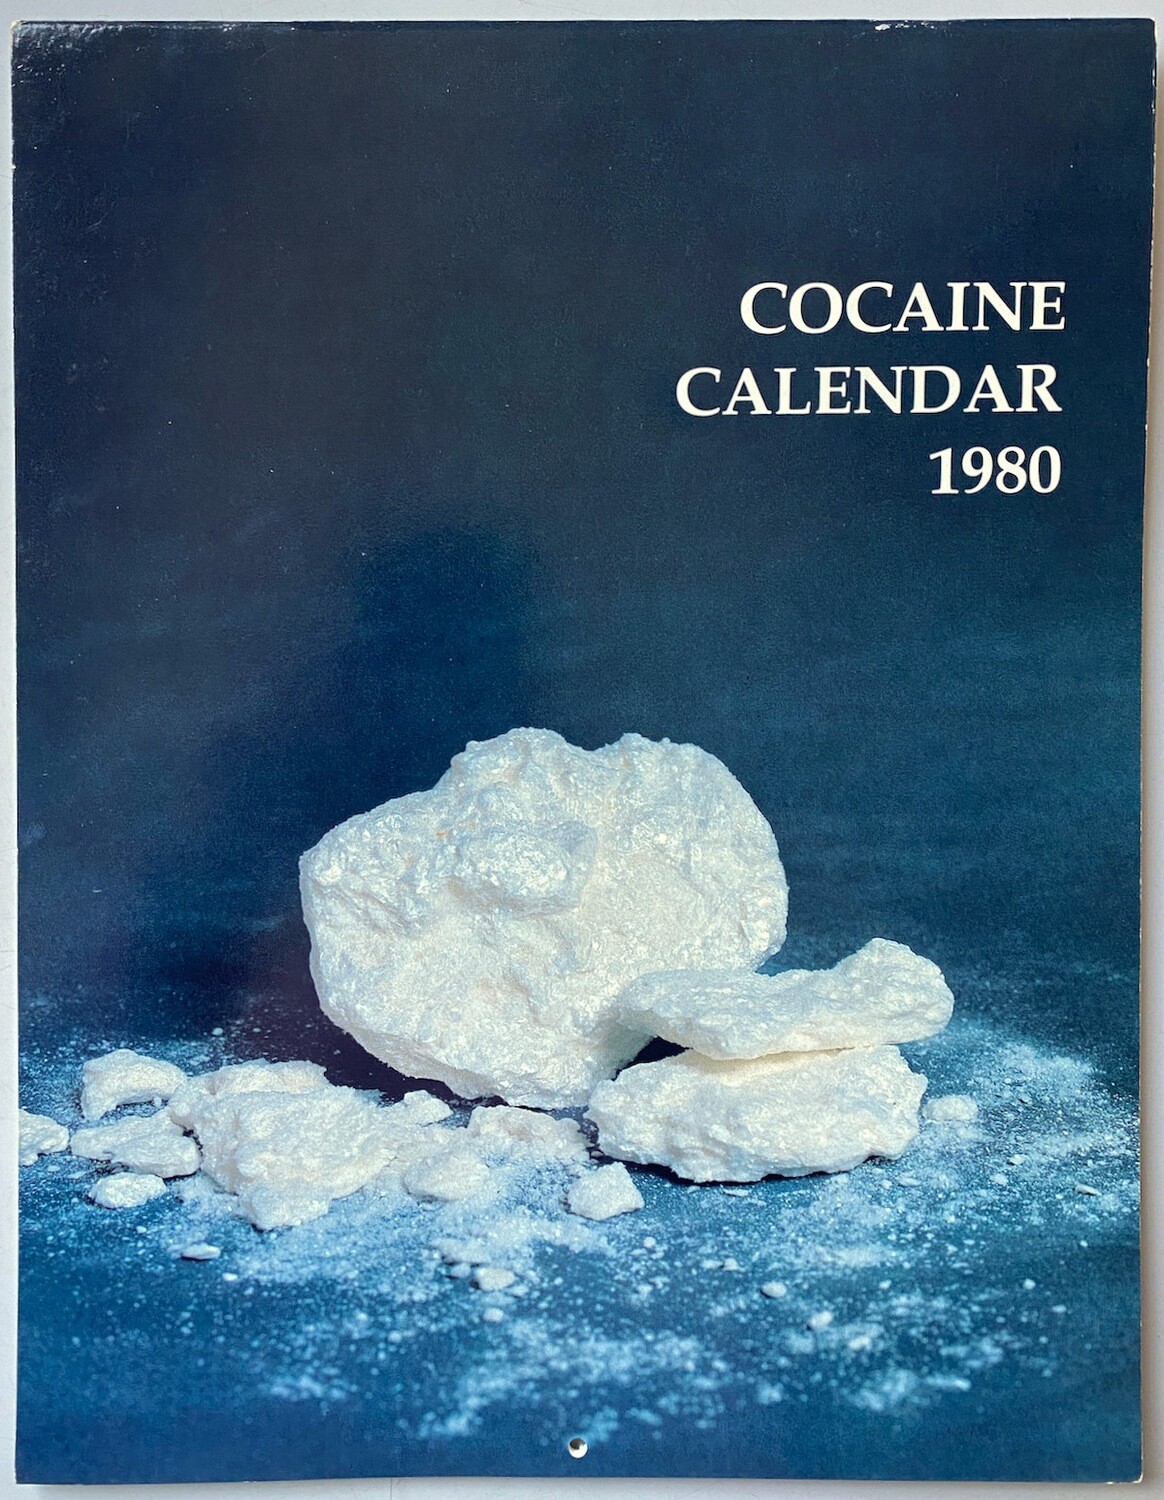 Cocaine Calendar 1980